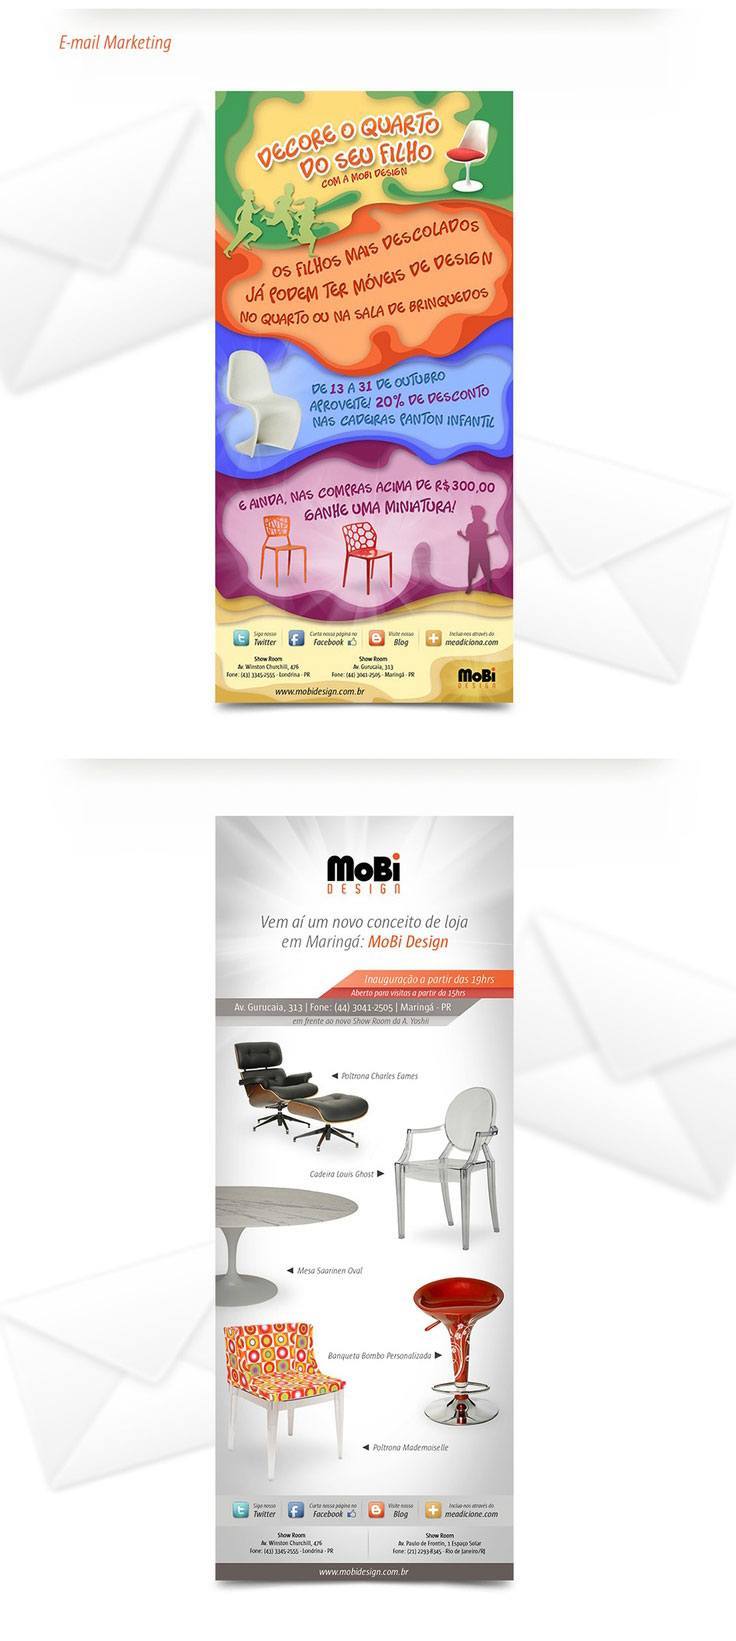 Mobi Design - E-mail Marketing